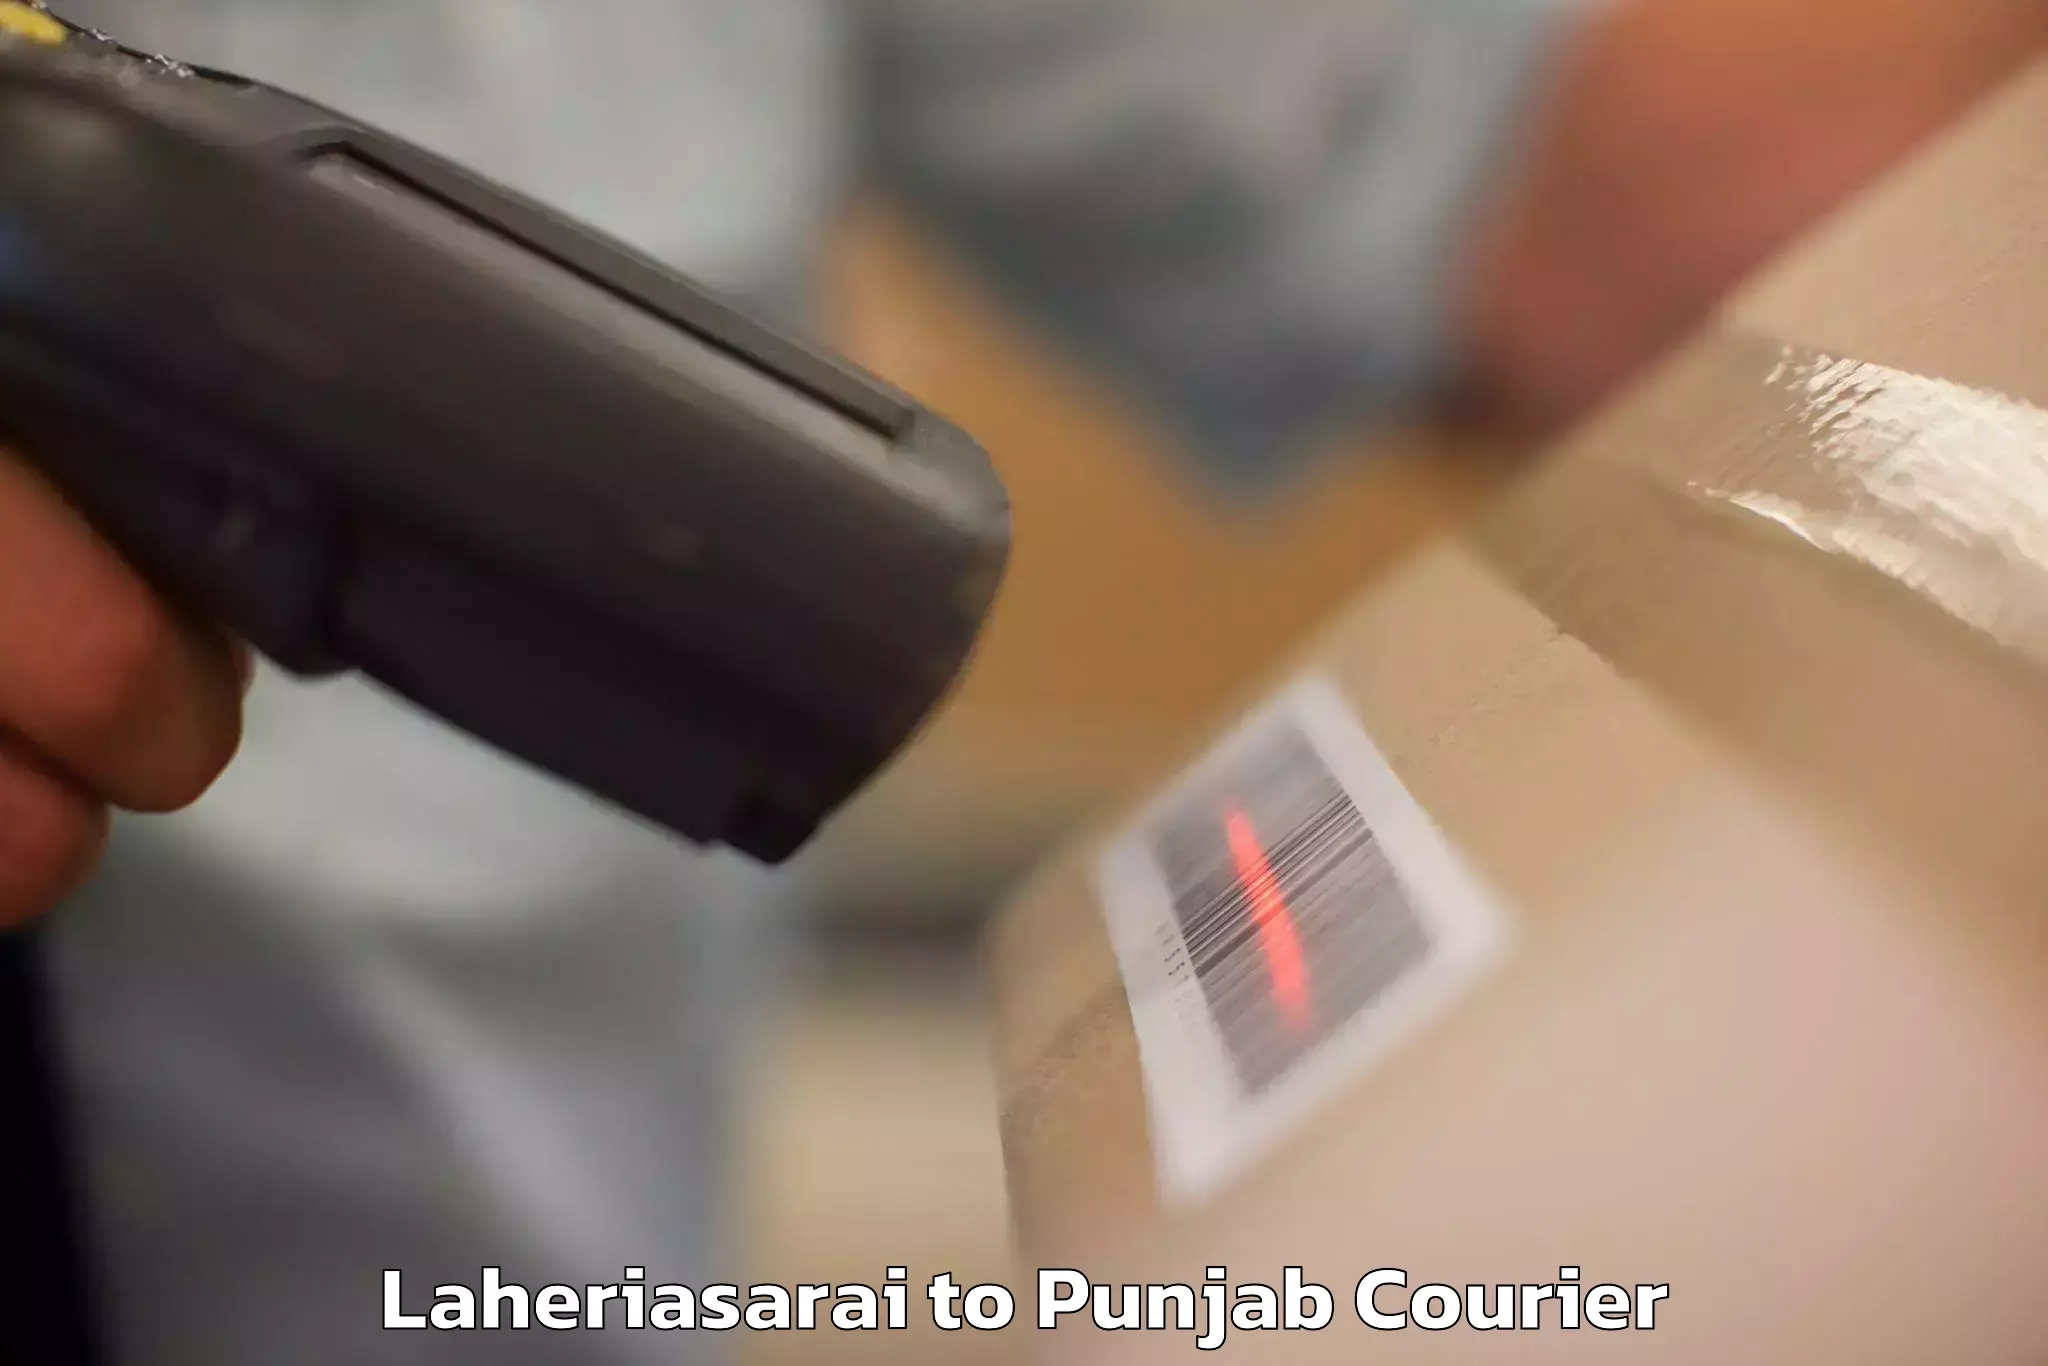 Luggage transport company Laheriasarai to Central University of Punjab Bathinda